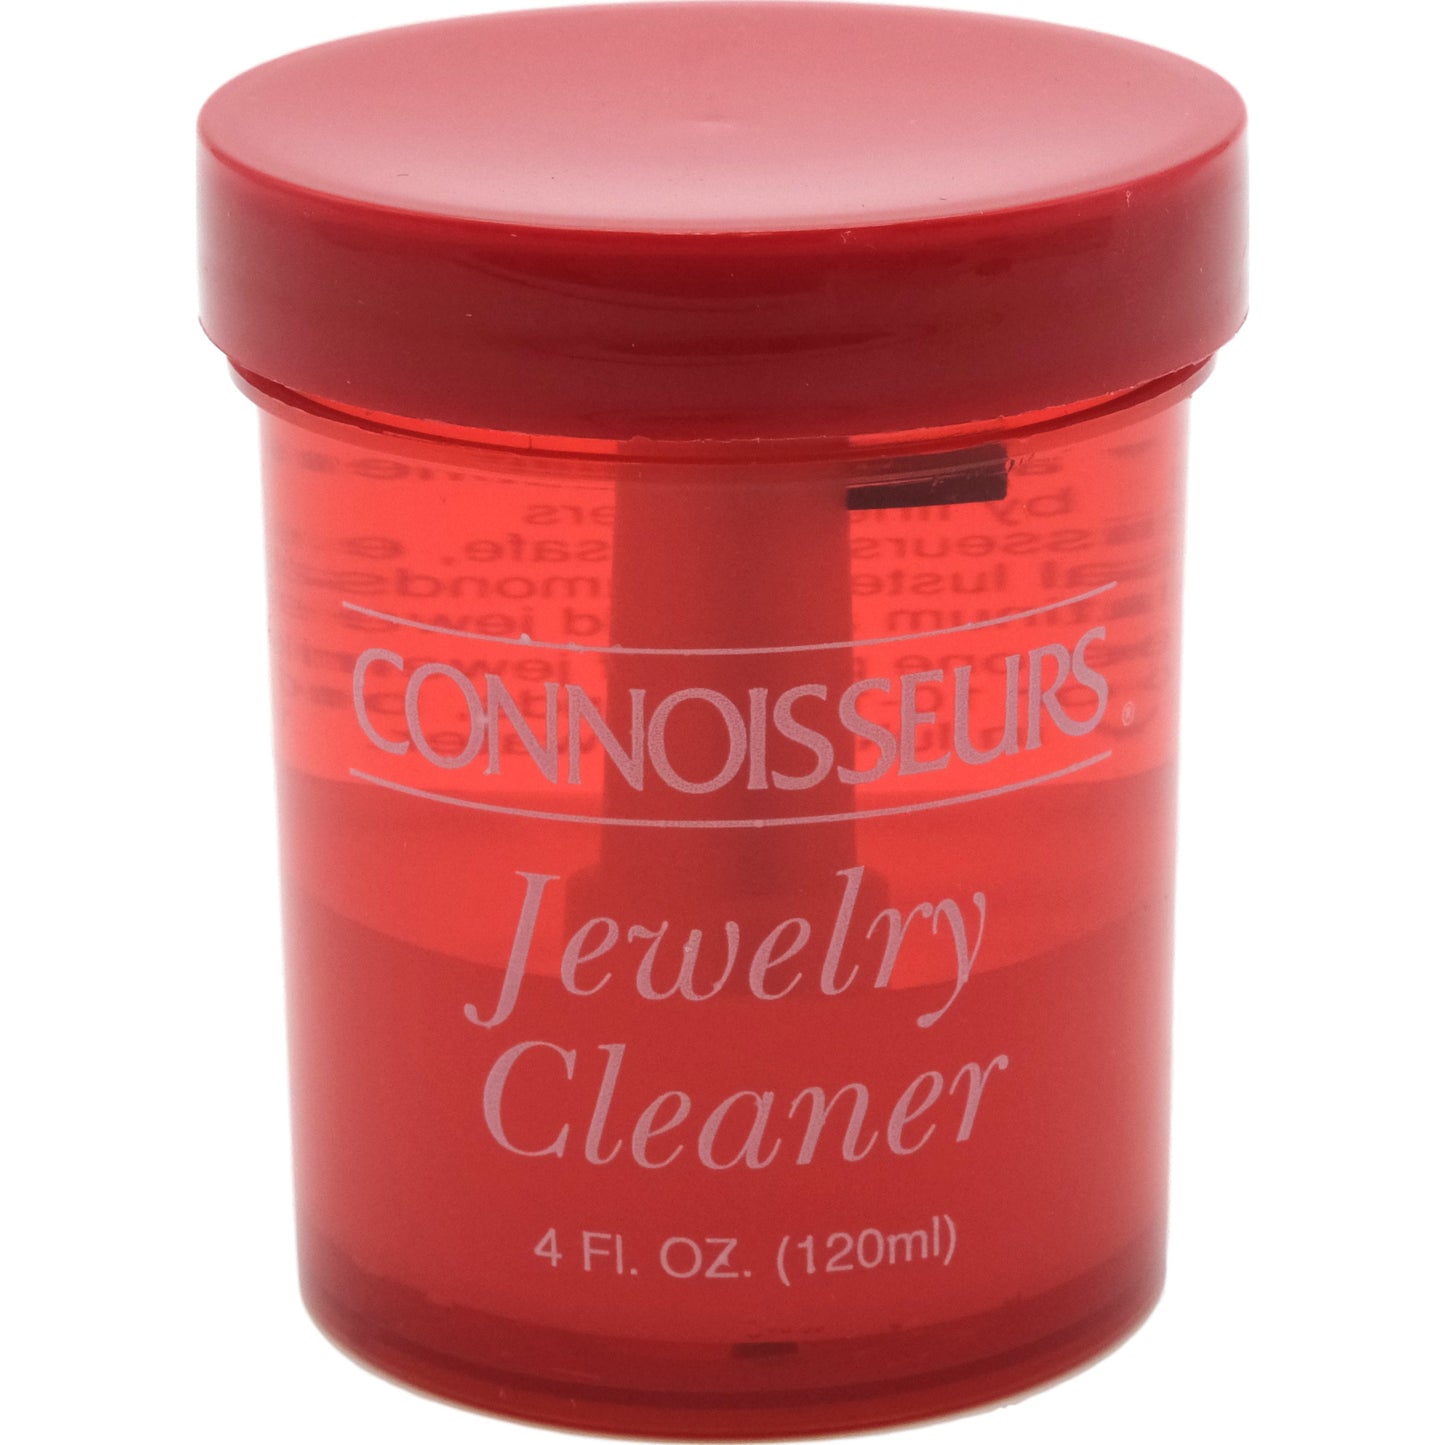 Connoisseurs Jewelry Cleaner 8 fl oz 2Pcs